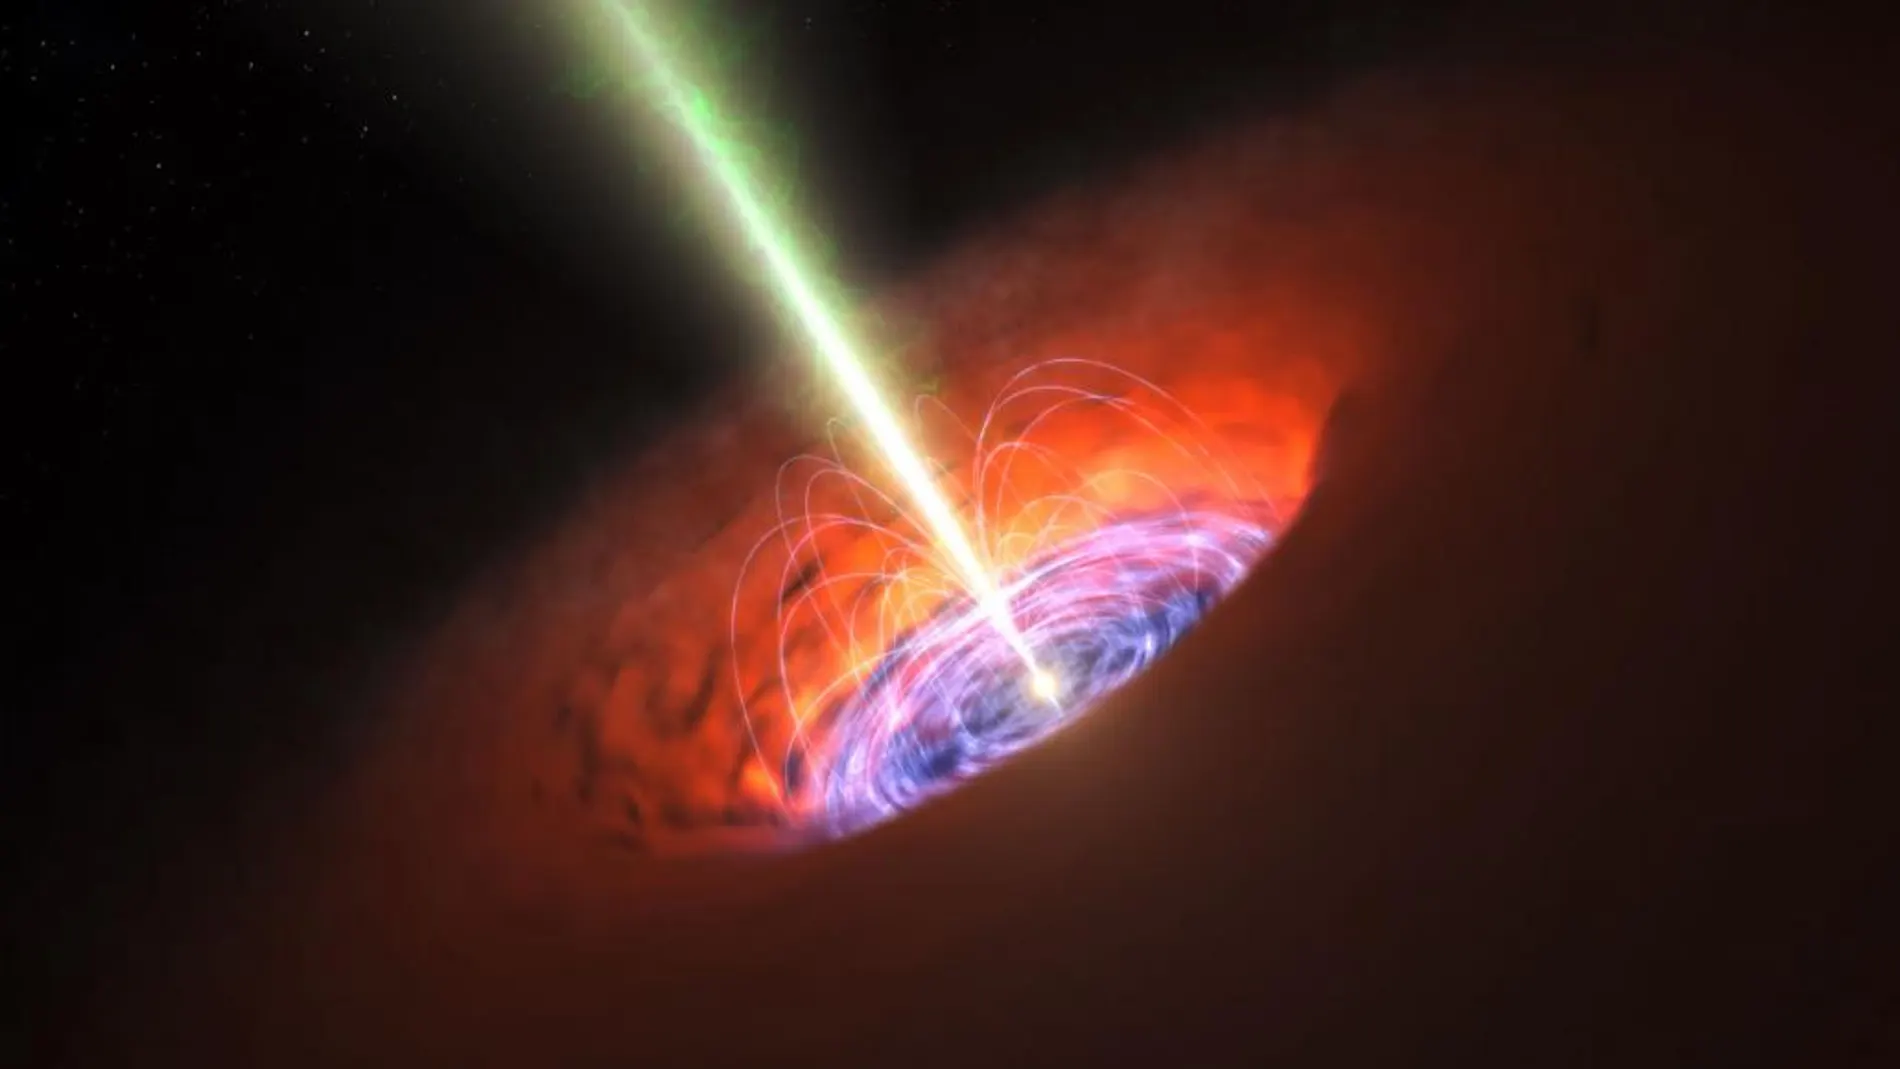 Ilustración de un agujero negro supermasivo en el centro de una galaxia